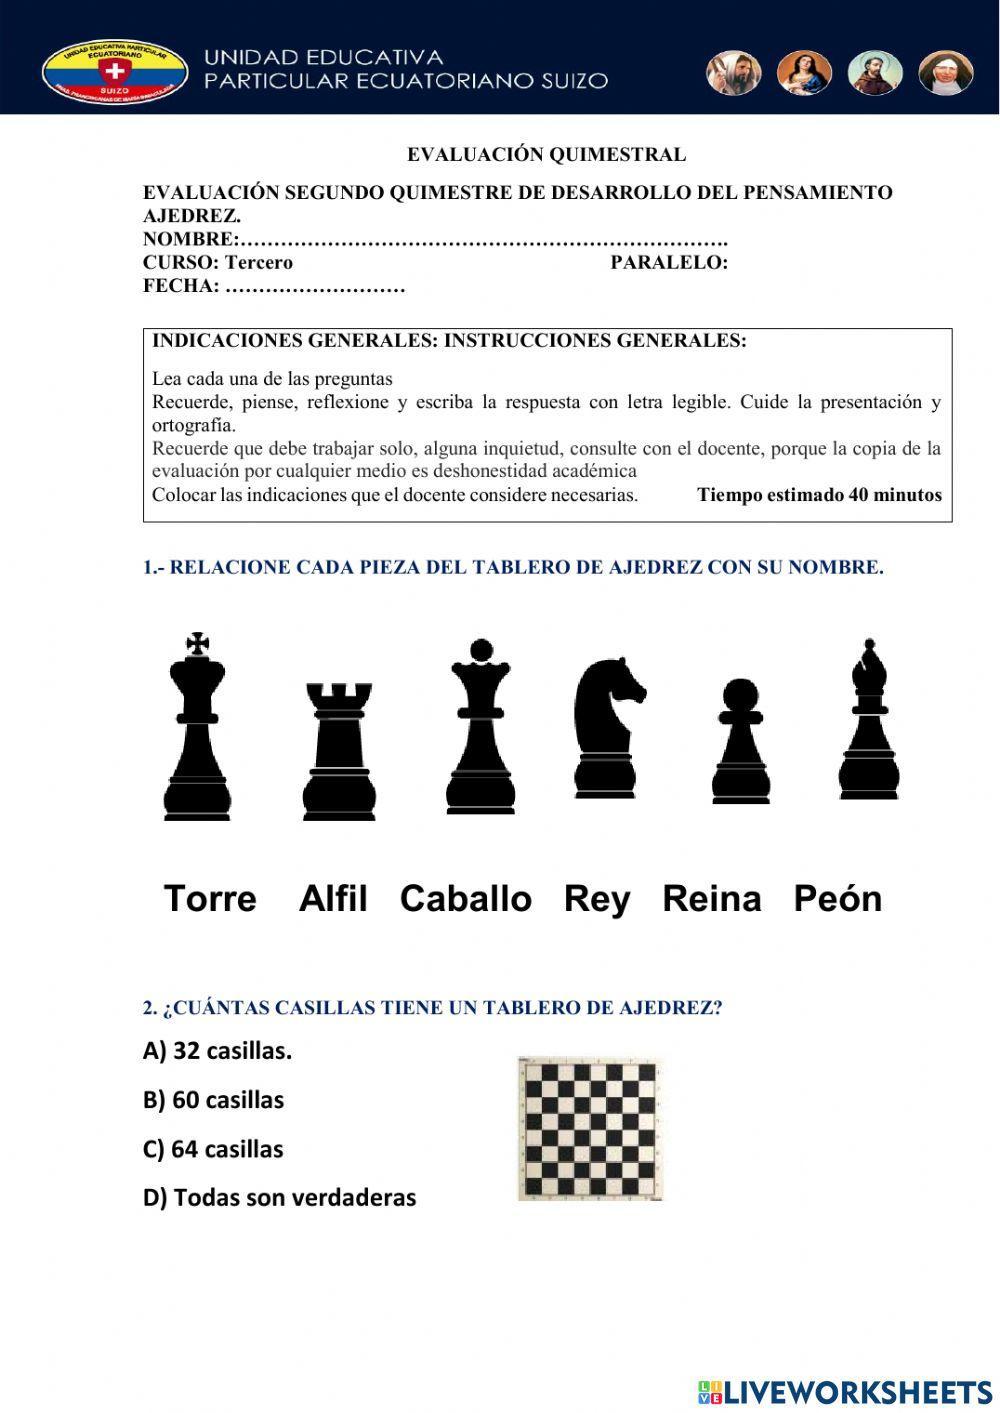 Evaluación II quimestre ajedrez